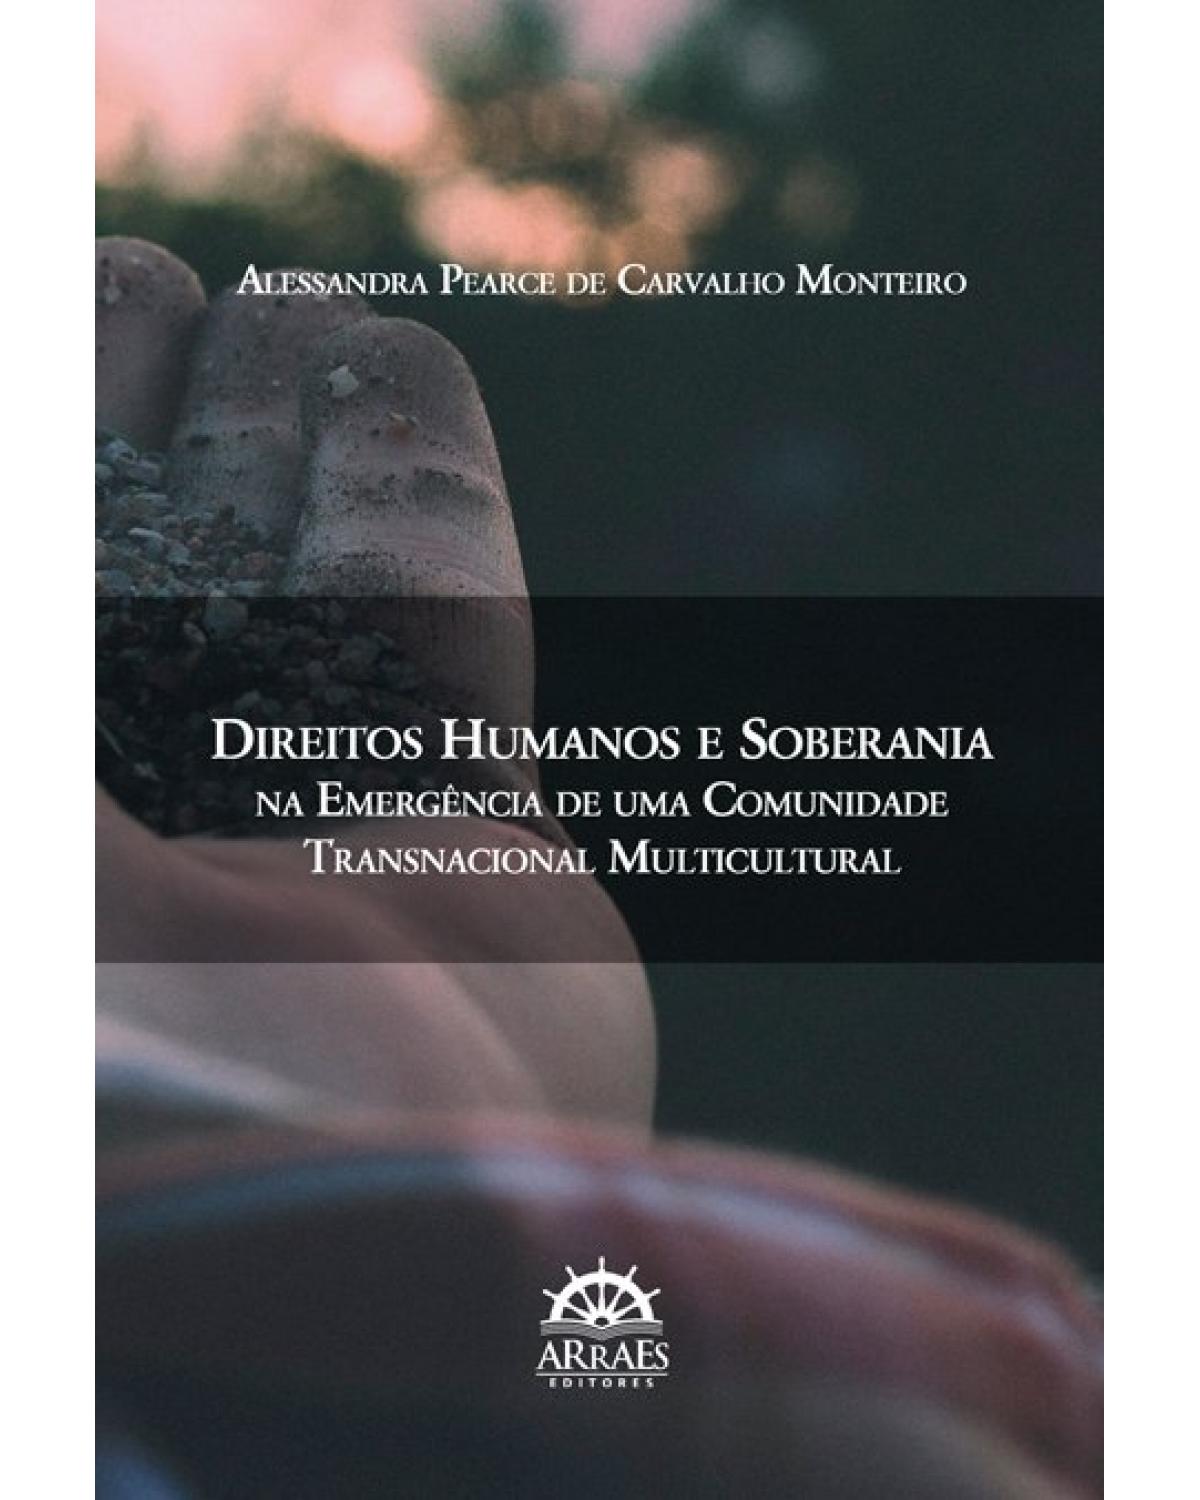 Direitos humanos e soberania na emergência de uma comunidade transnacional multicultural - Volume 1:  - 1ª Edição | 2019